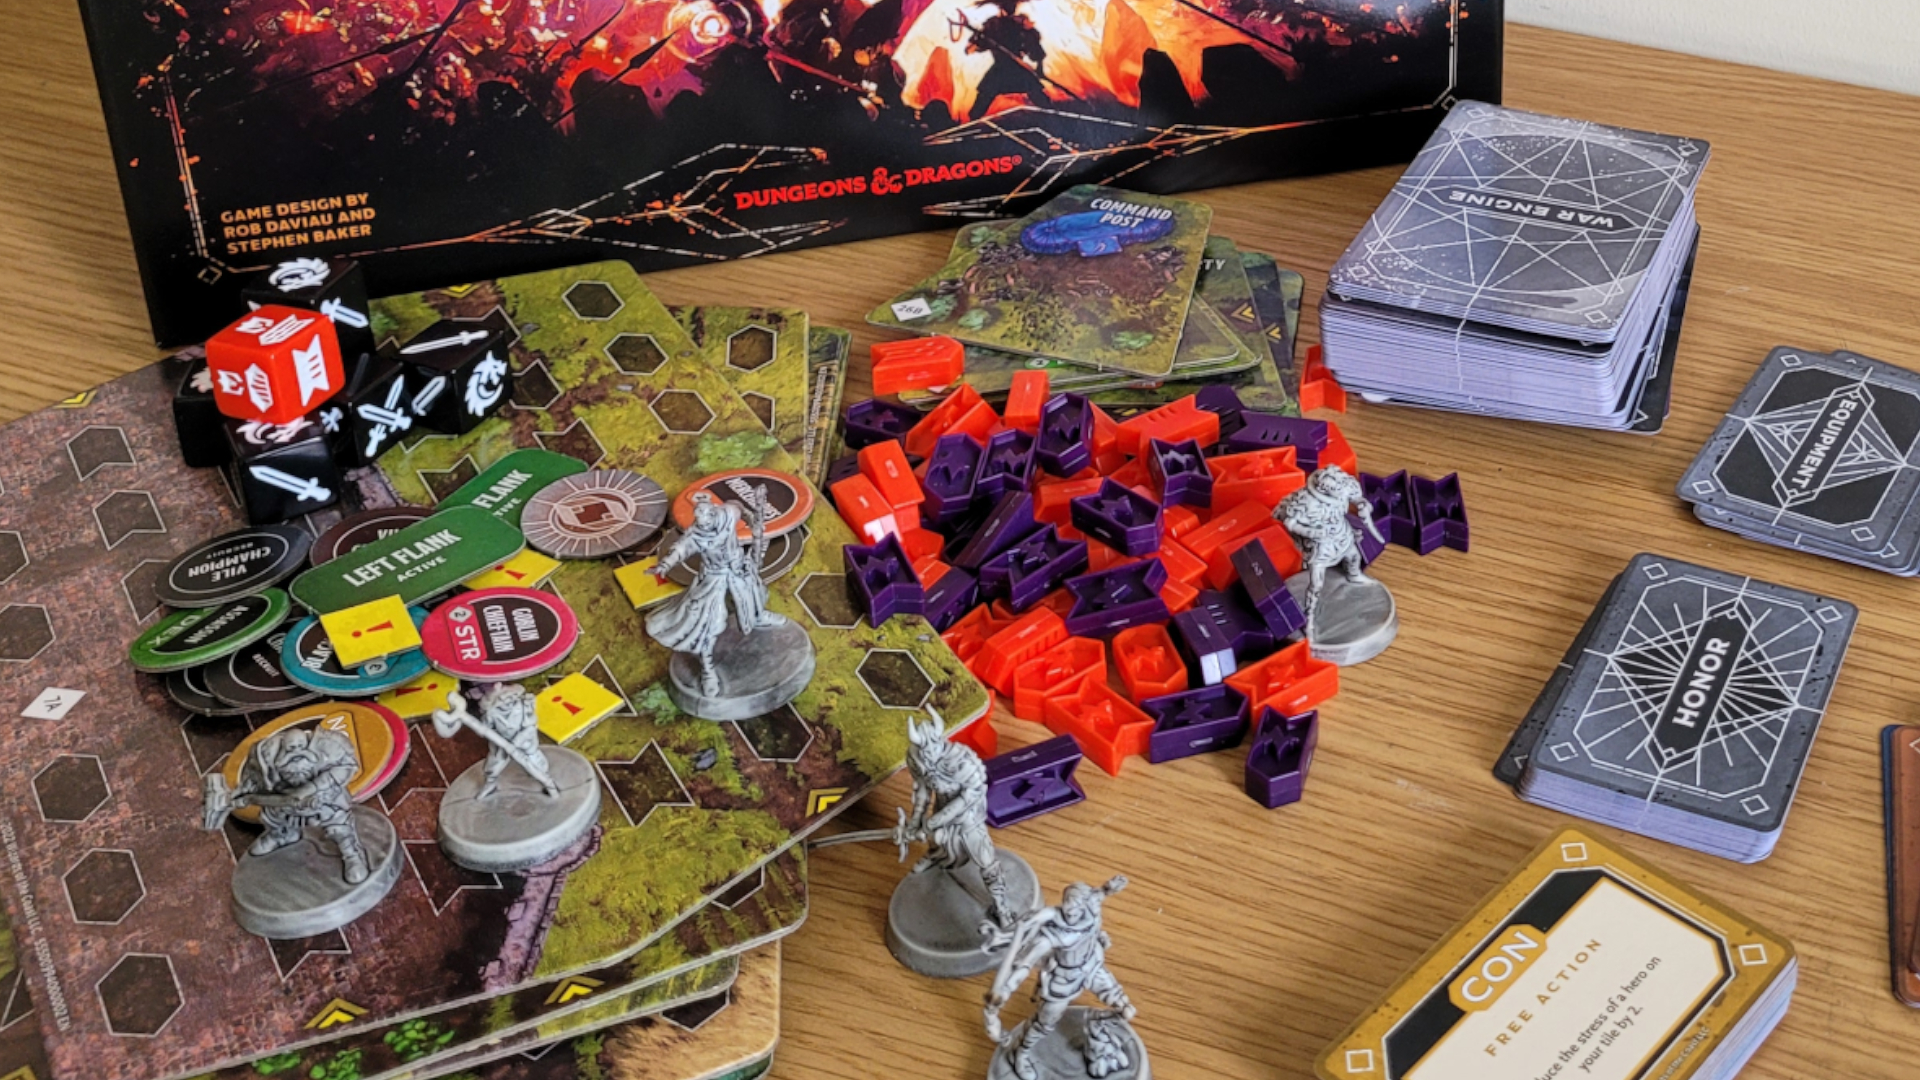 Les composants, les tuiles de plateau et les modèles de Dragonlance : Warriors of Krynn reposent sur une table en bois devant la boîte de jeu de société.